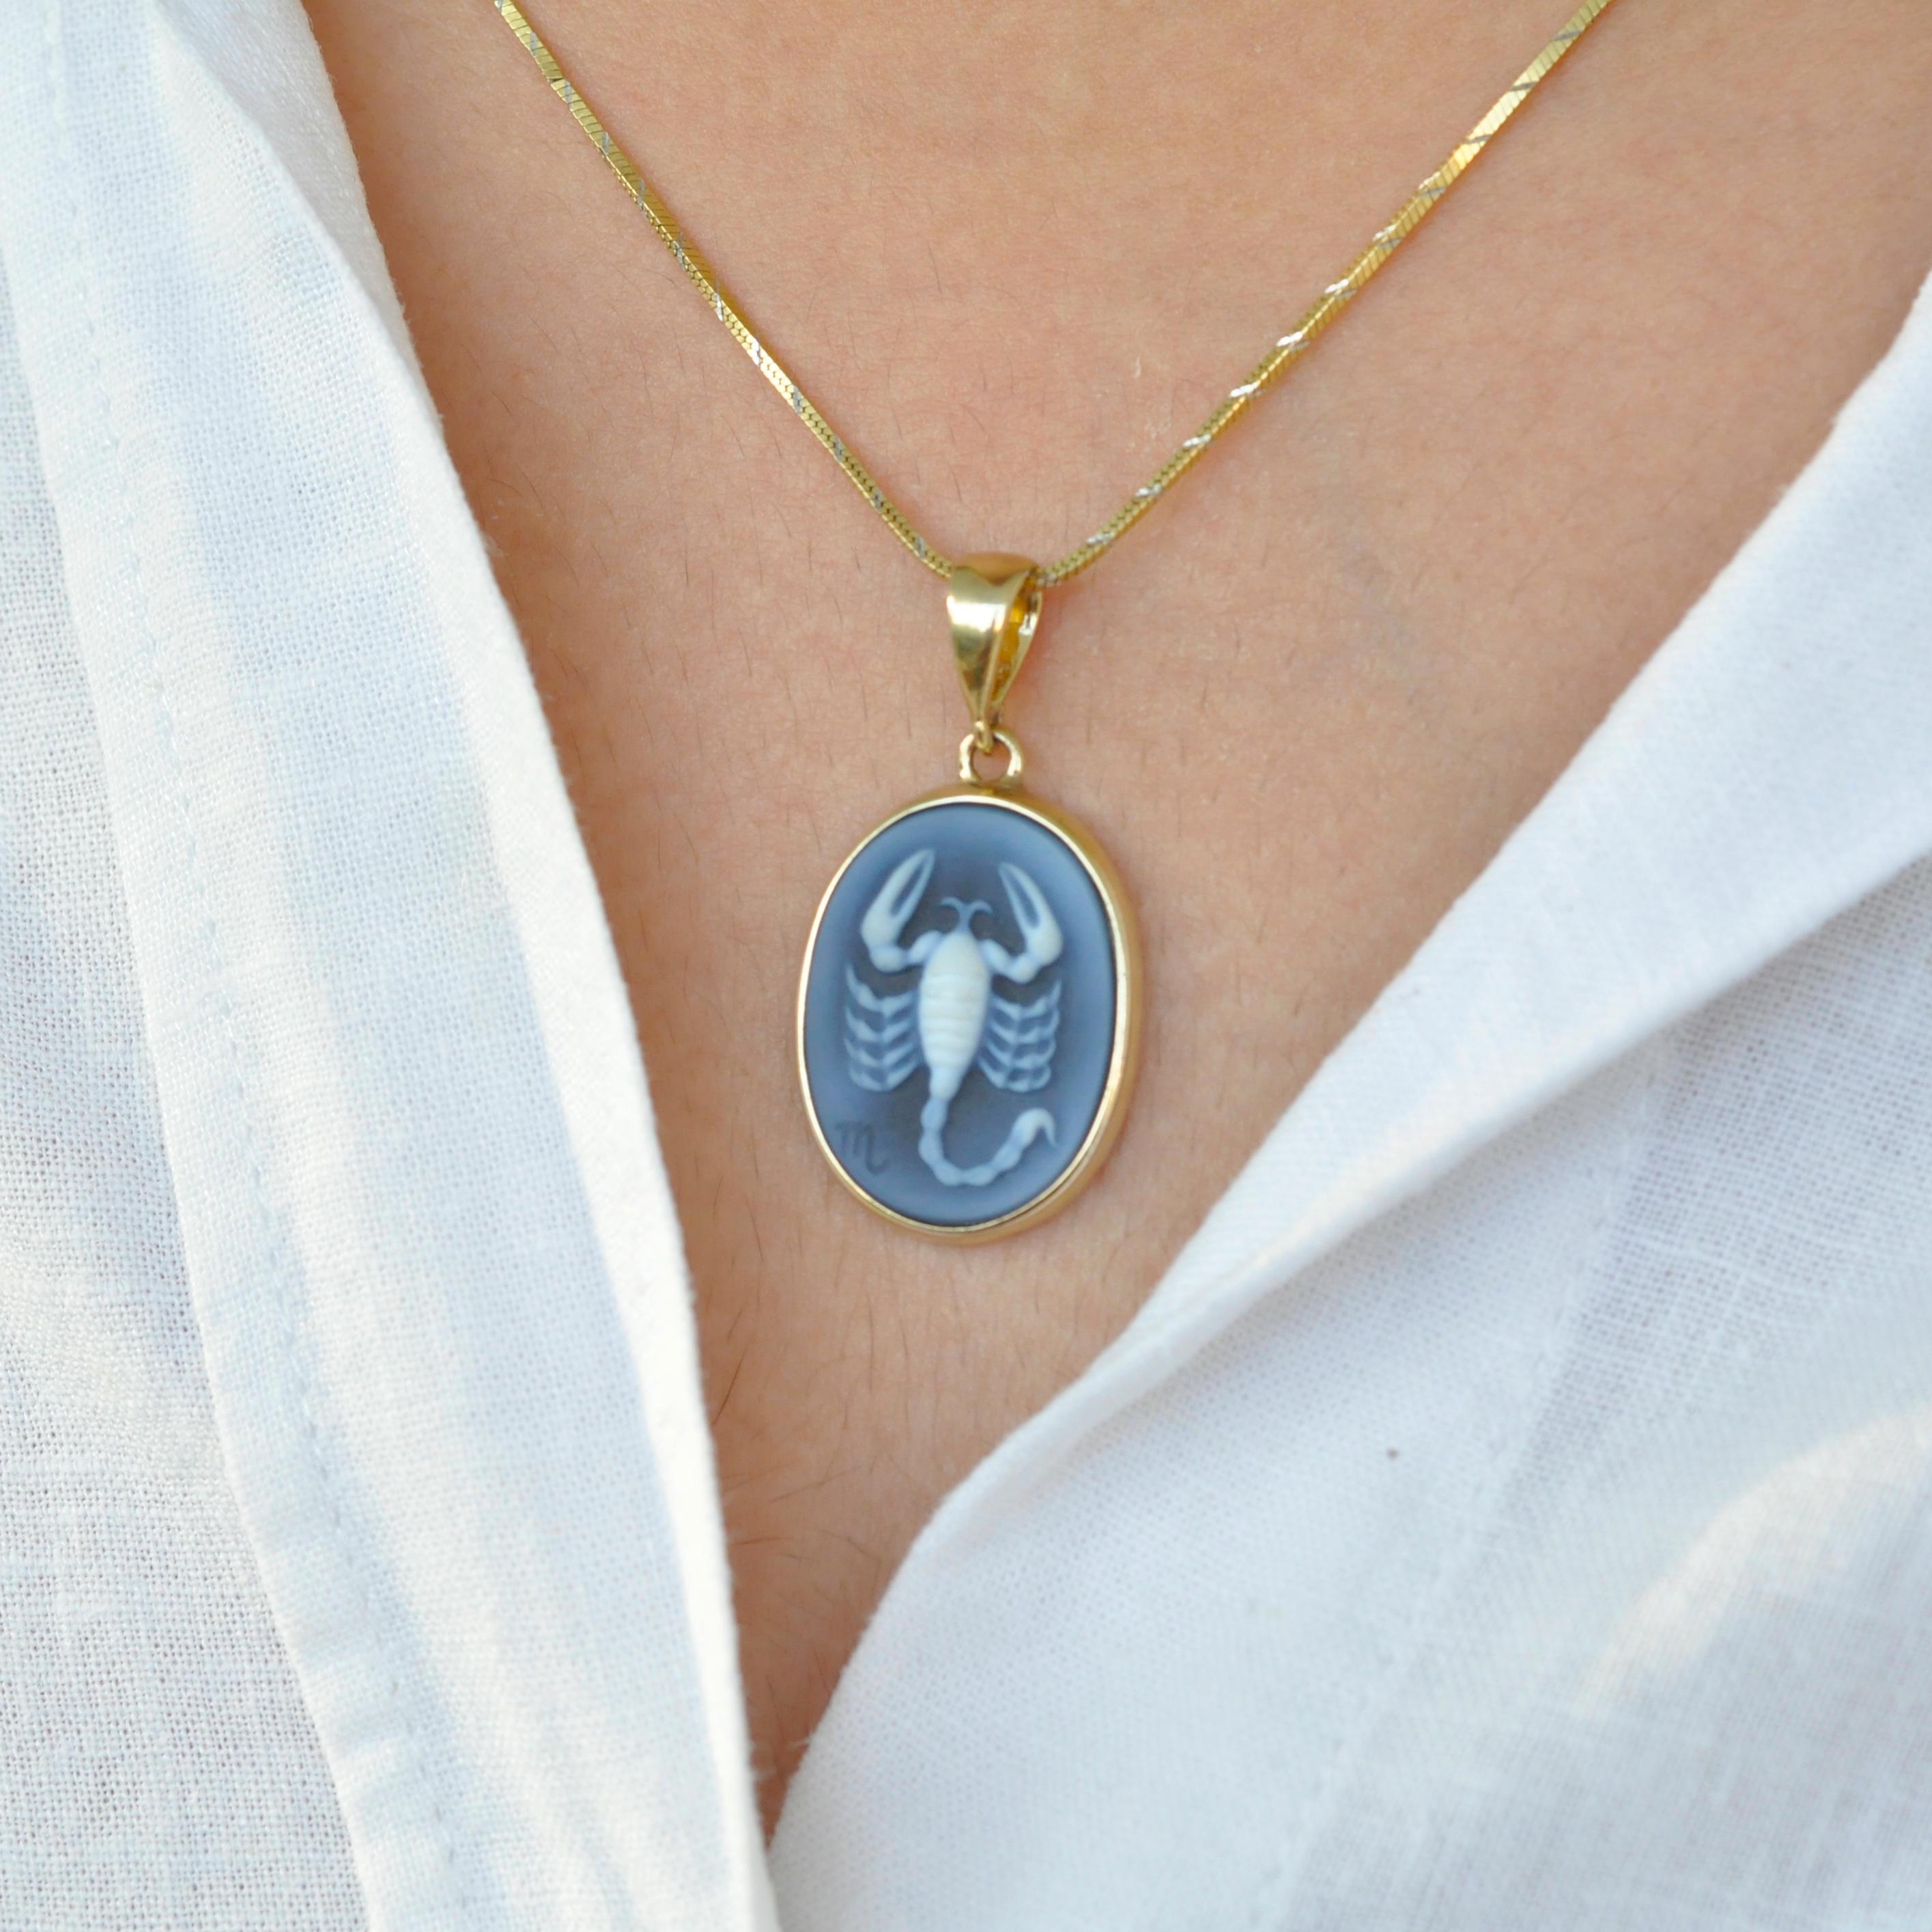 Wir präsentieren unsere bezaubernde Scorpio Zodiac Carving Cameo Pendant Necklace aus der Zodiac Collection. Diese Halskette zeigt eine atemberaubende Kamee, die von einem erfahrenen Kameengraveur in Deutschland sorgfältig hergestellt wurde. Die